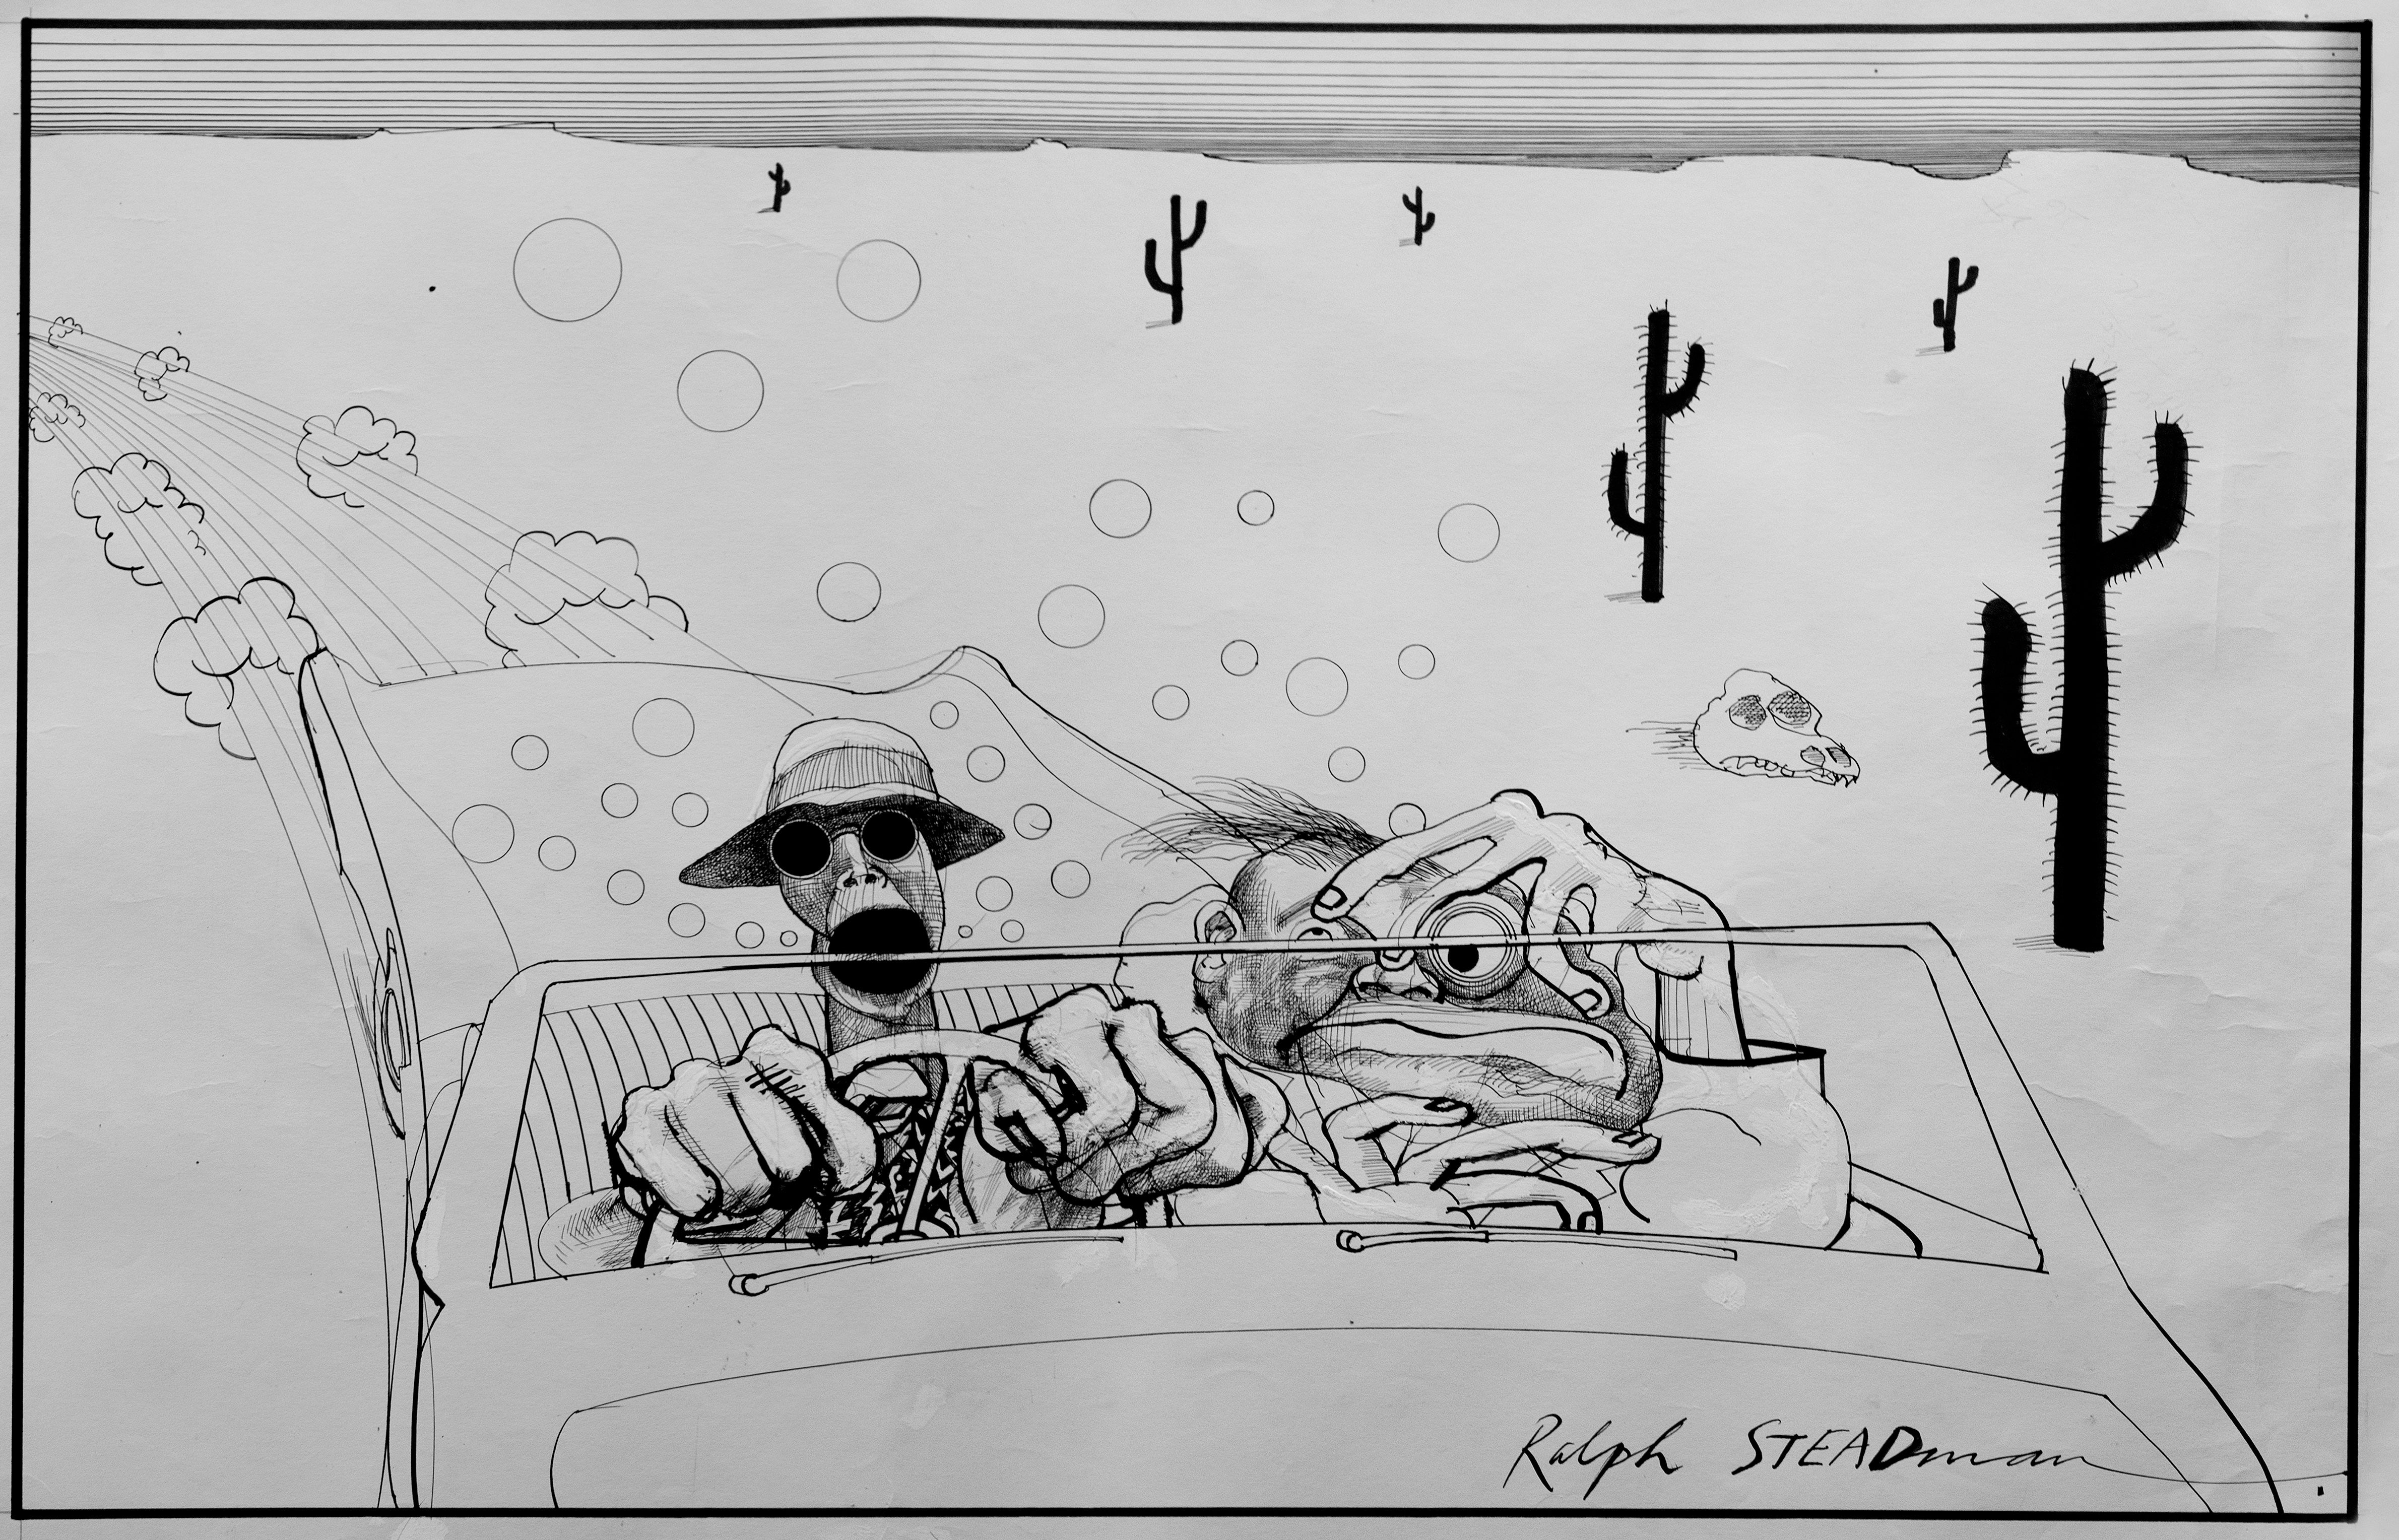 ‘ Bombing into Vegas ’ - El viaje a alta velocidad por el desierto de Thompson y Acosta, visto por Ralph Steadman